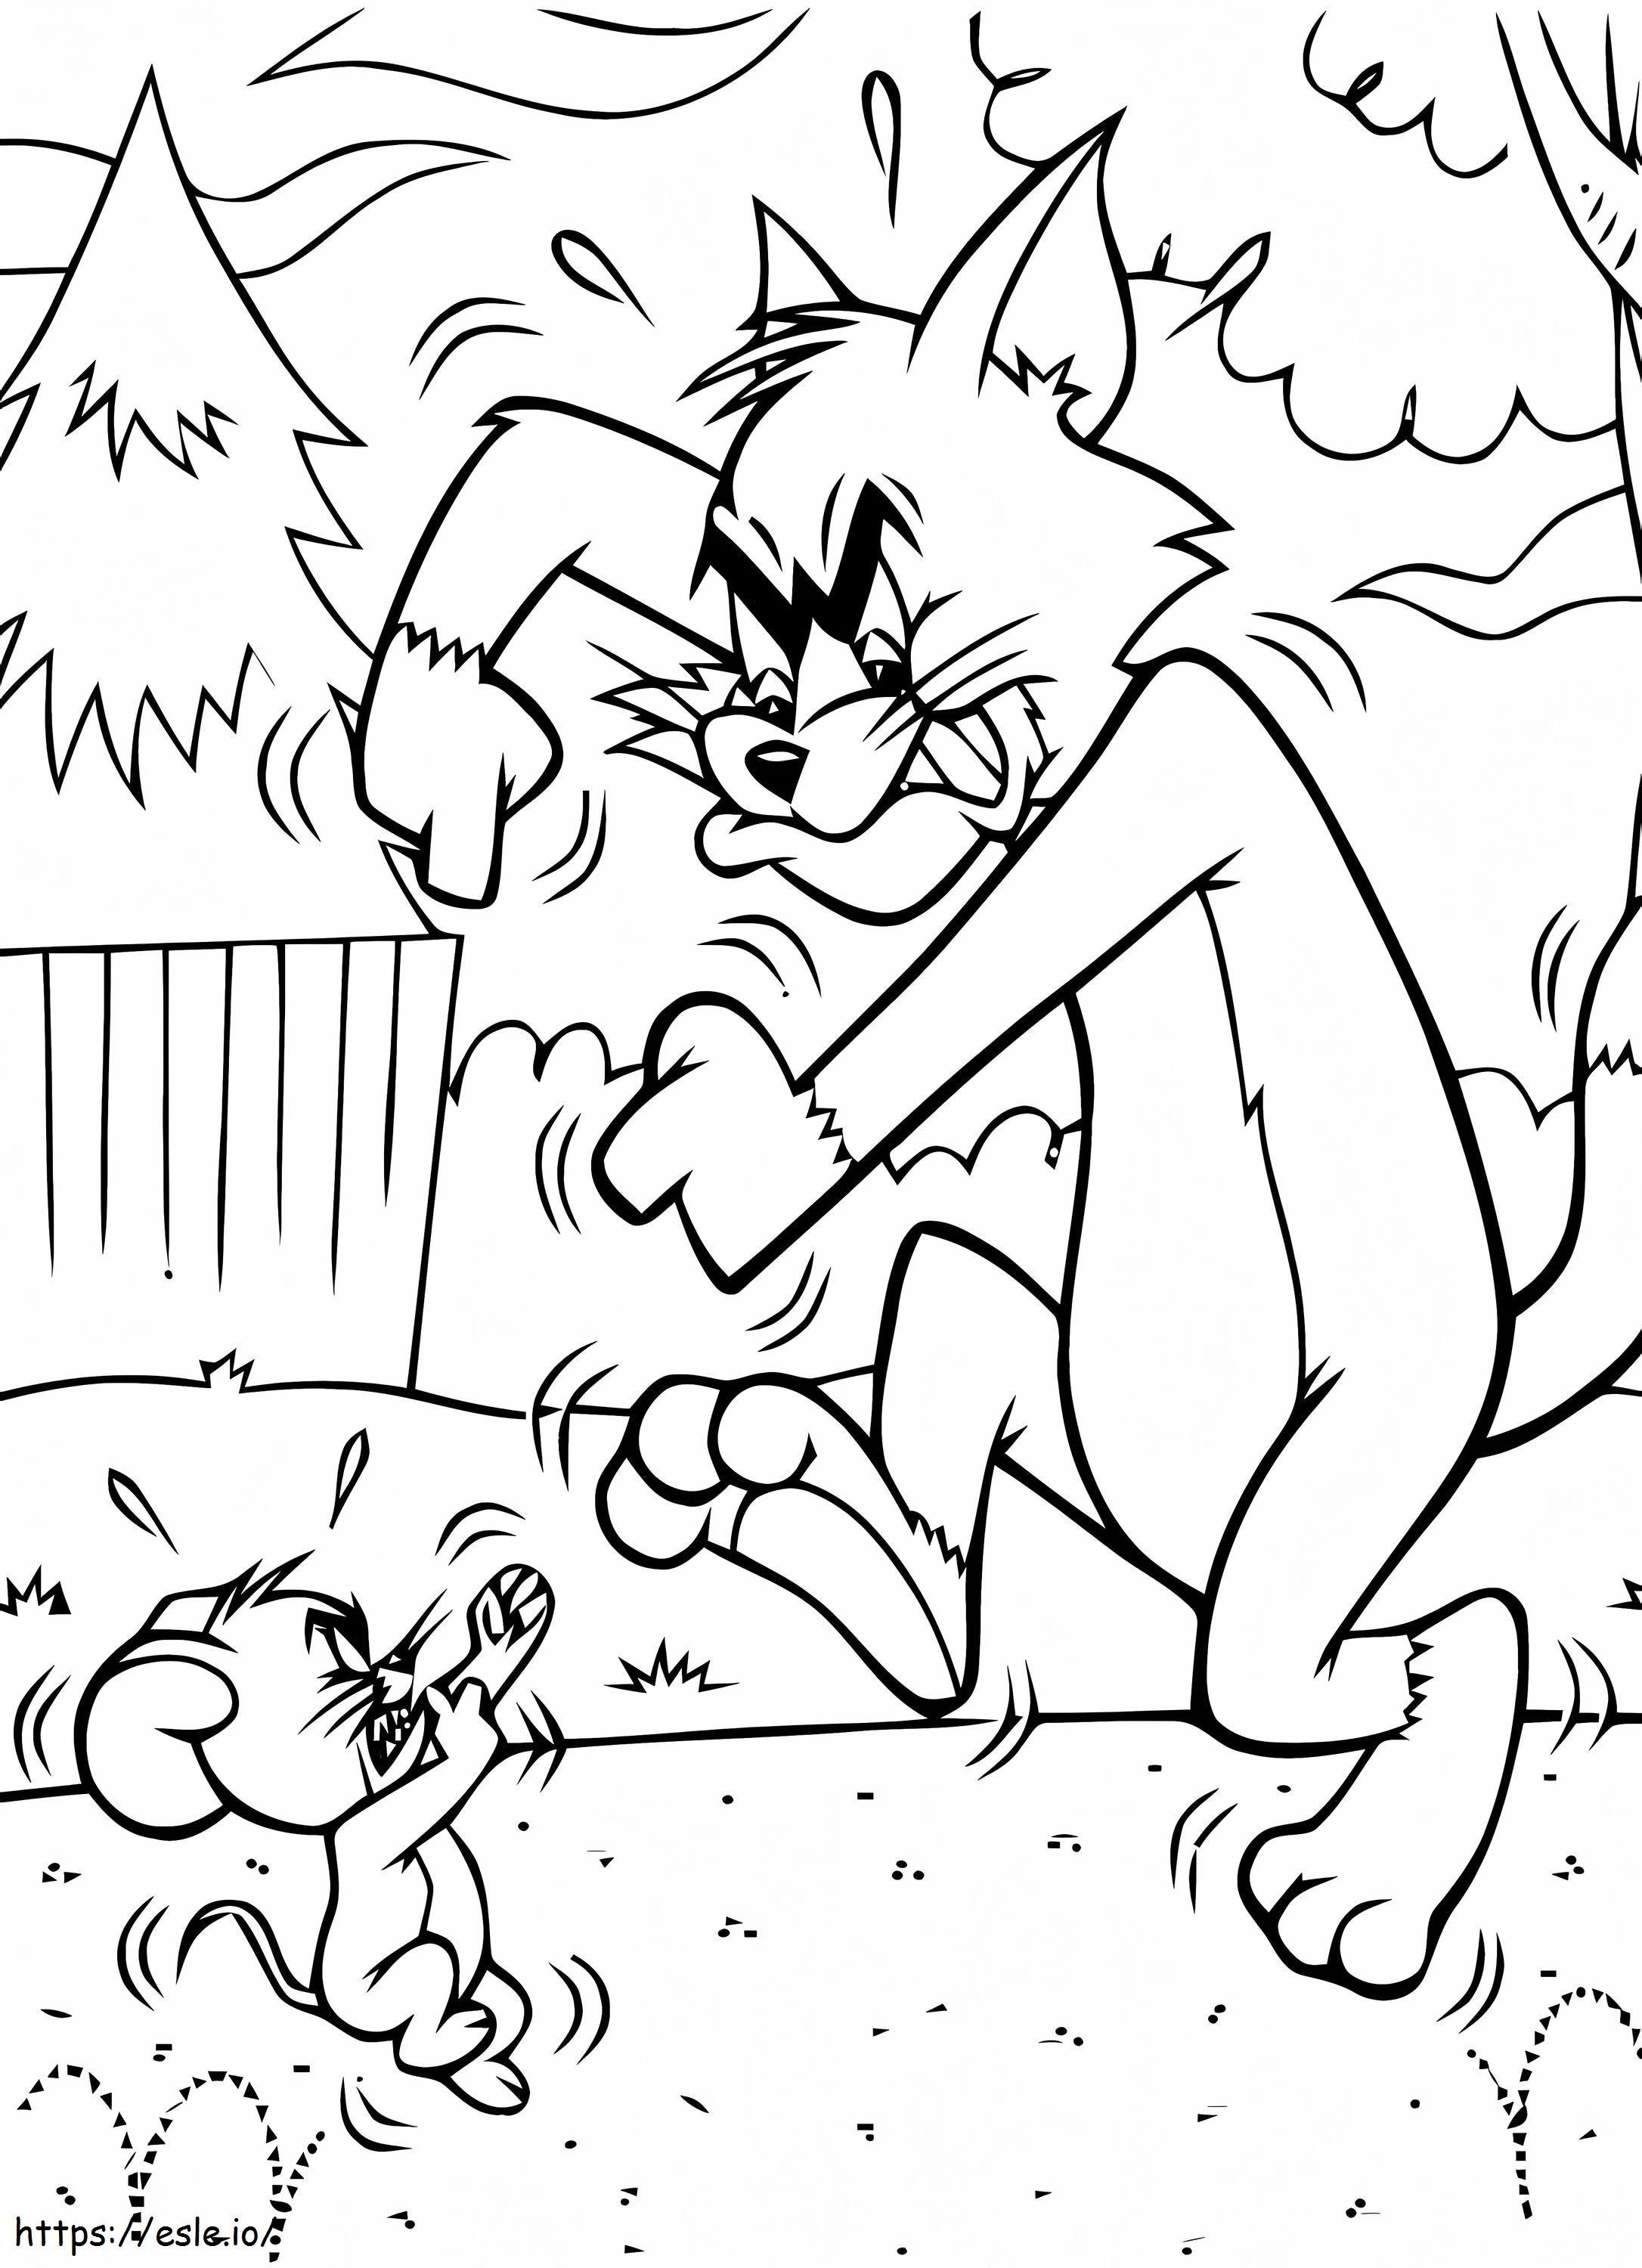 1548380318 Malvorlagen für Kinder Tom und Jerry 58876 ausmalbilder